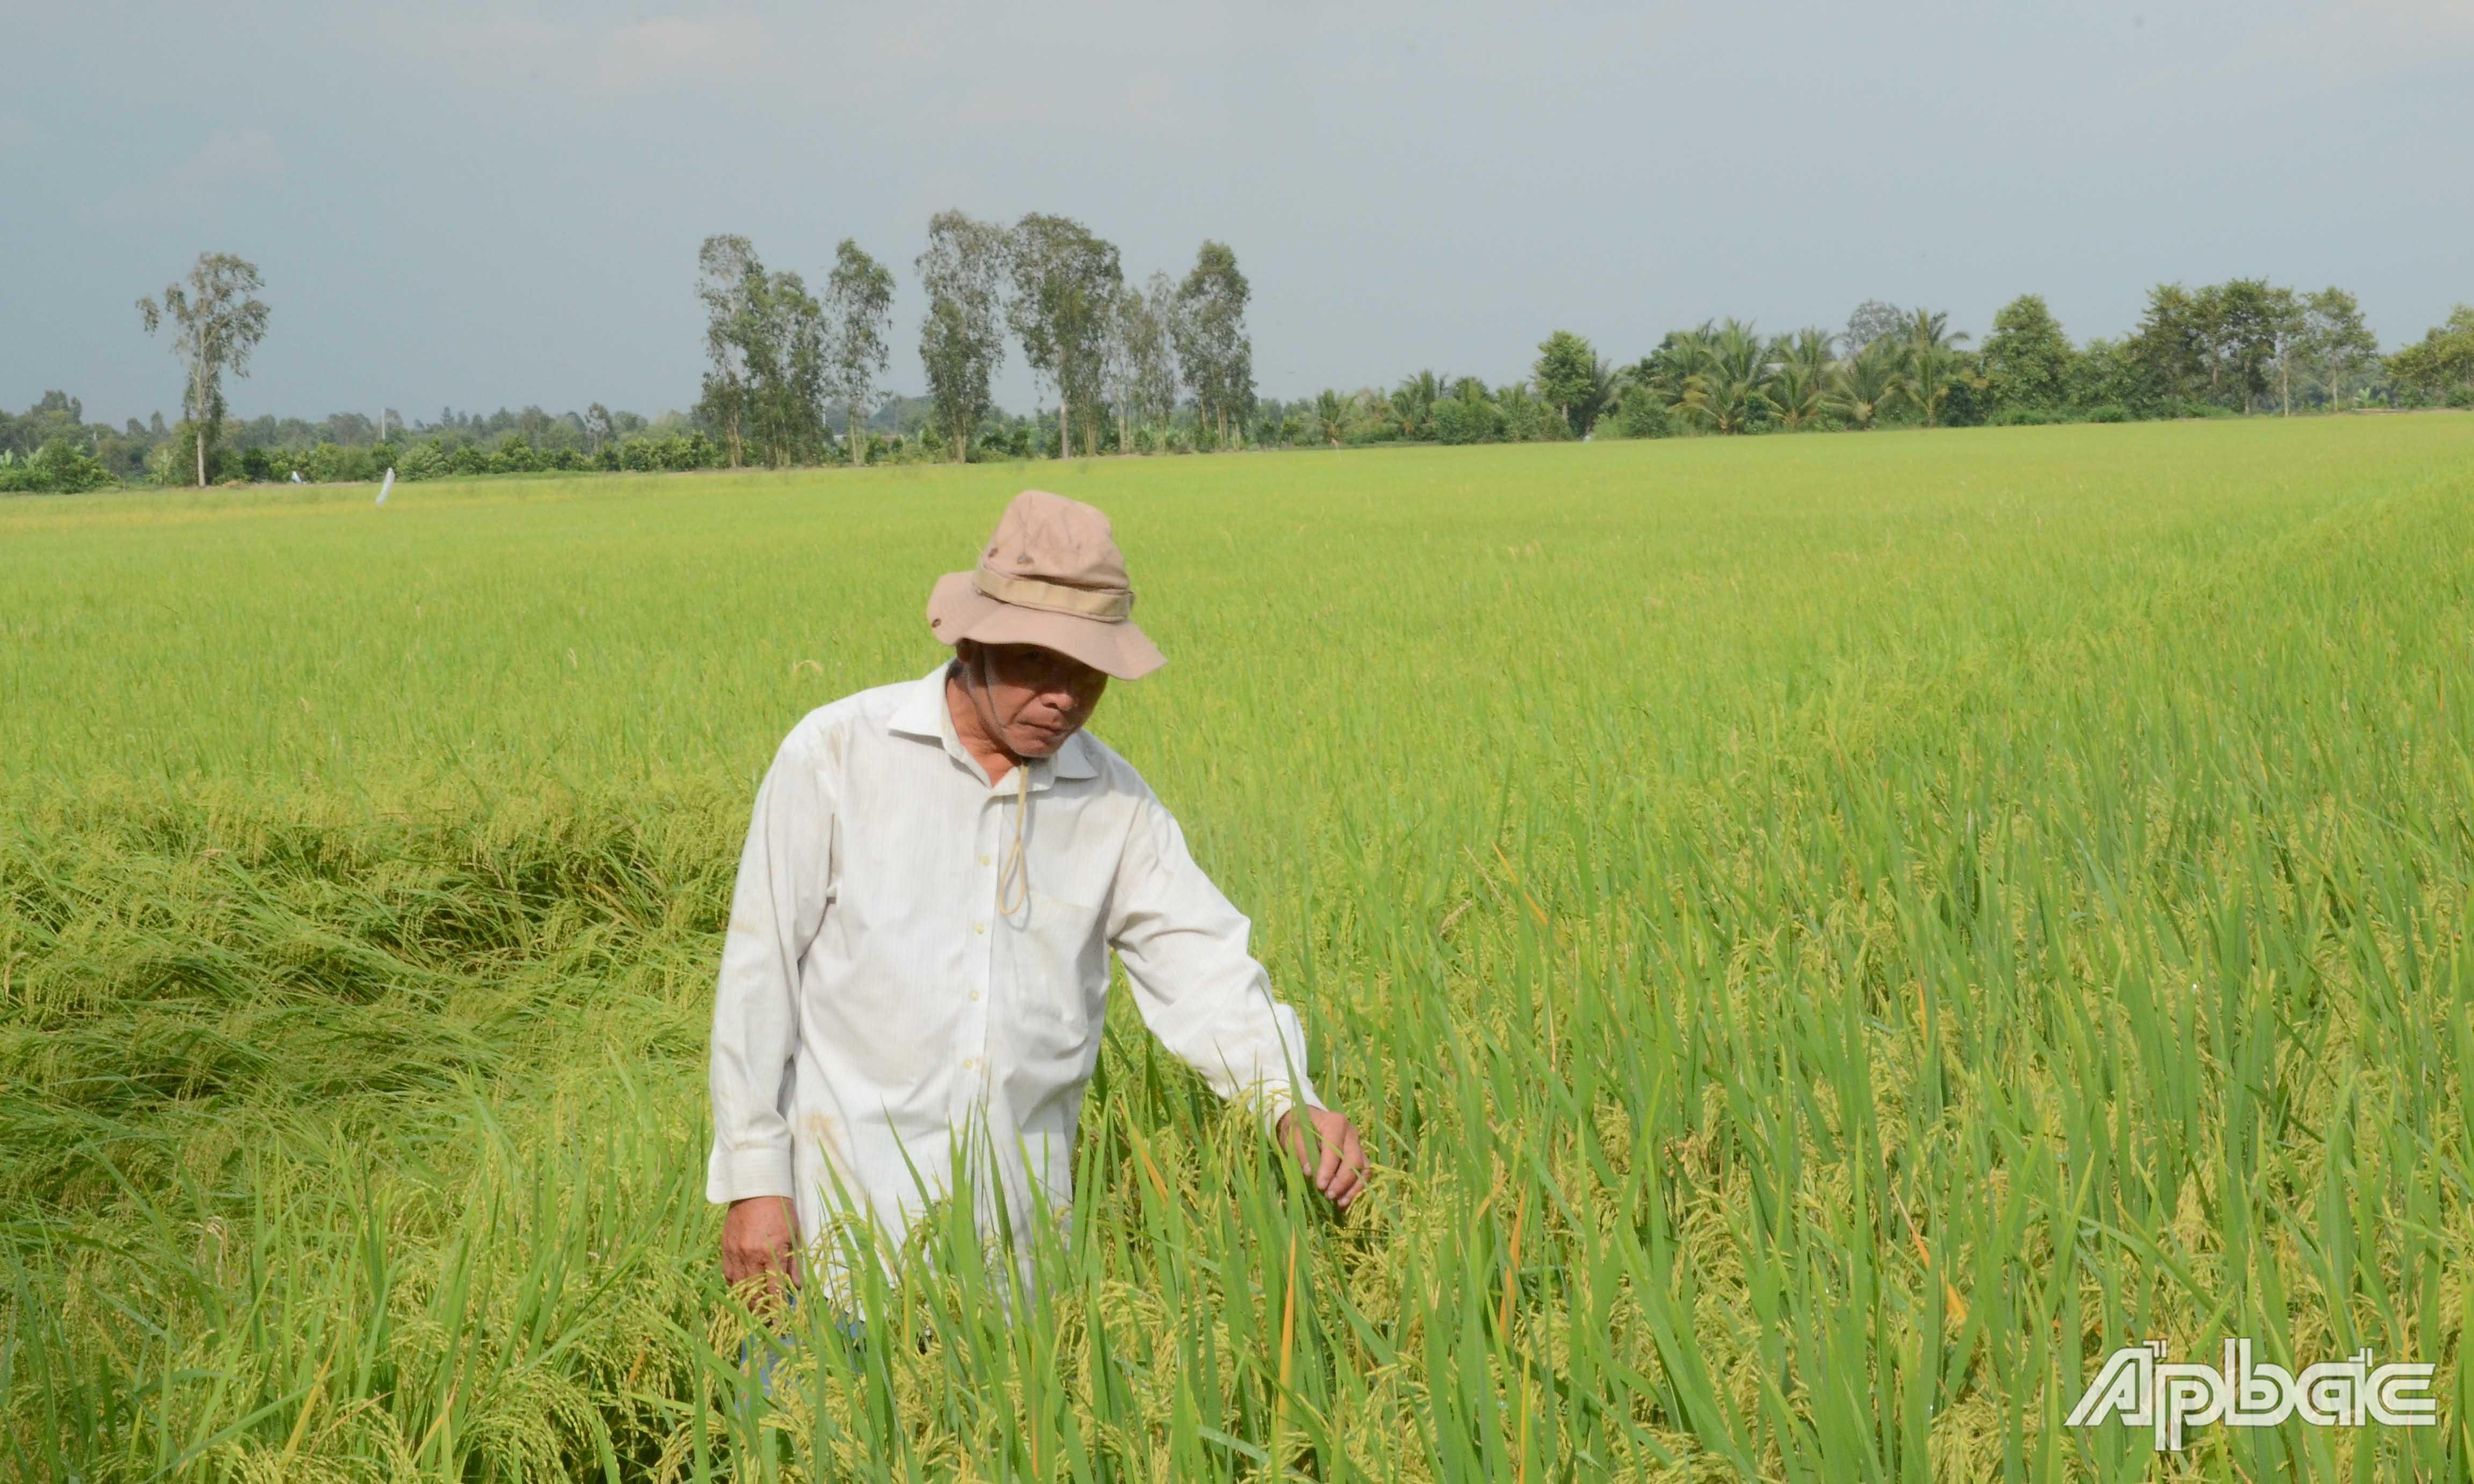 Thành viên HTX Dịch vụ nông nghiệp Mỹ Quới được hưởng lợi từ Dự án VnSAT, góp phần tăng thu nhập trong canh tác lúa.